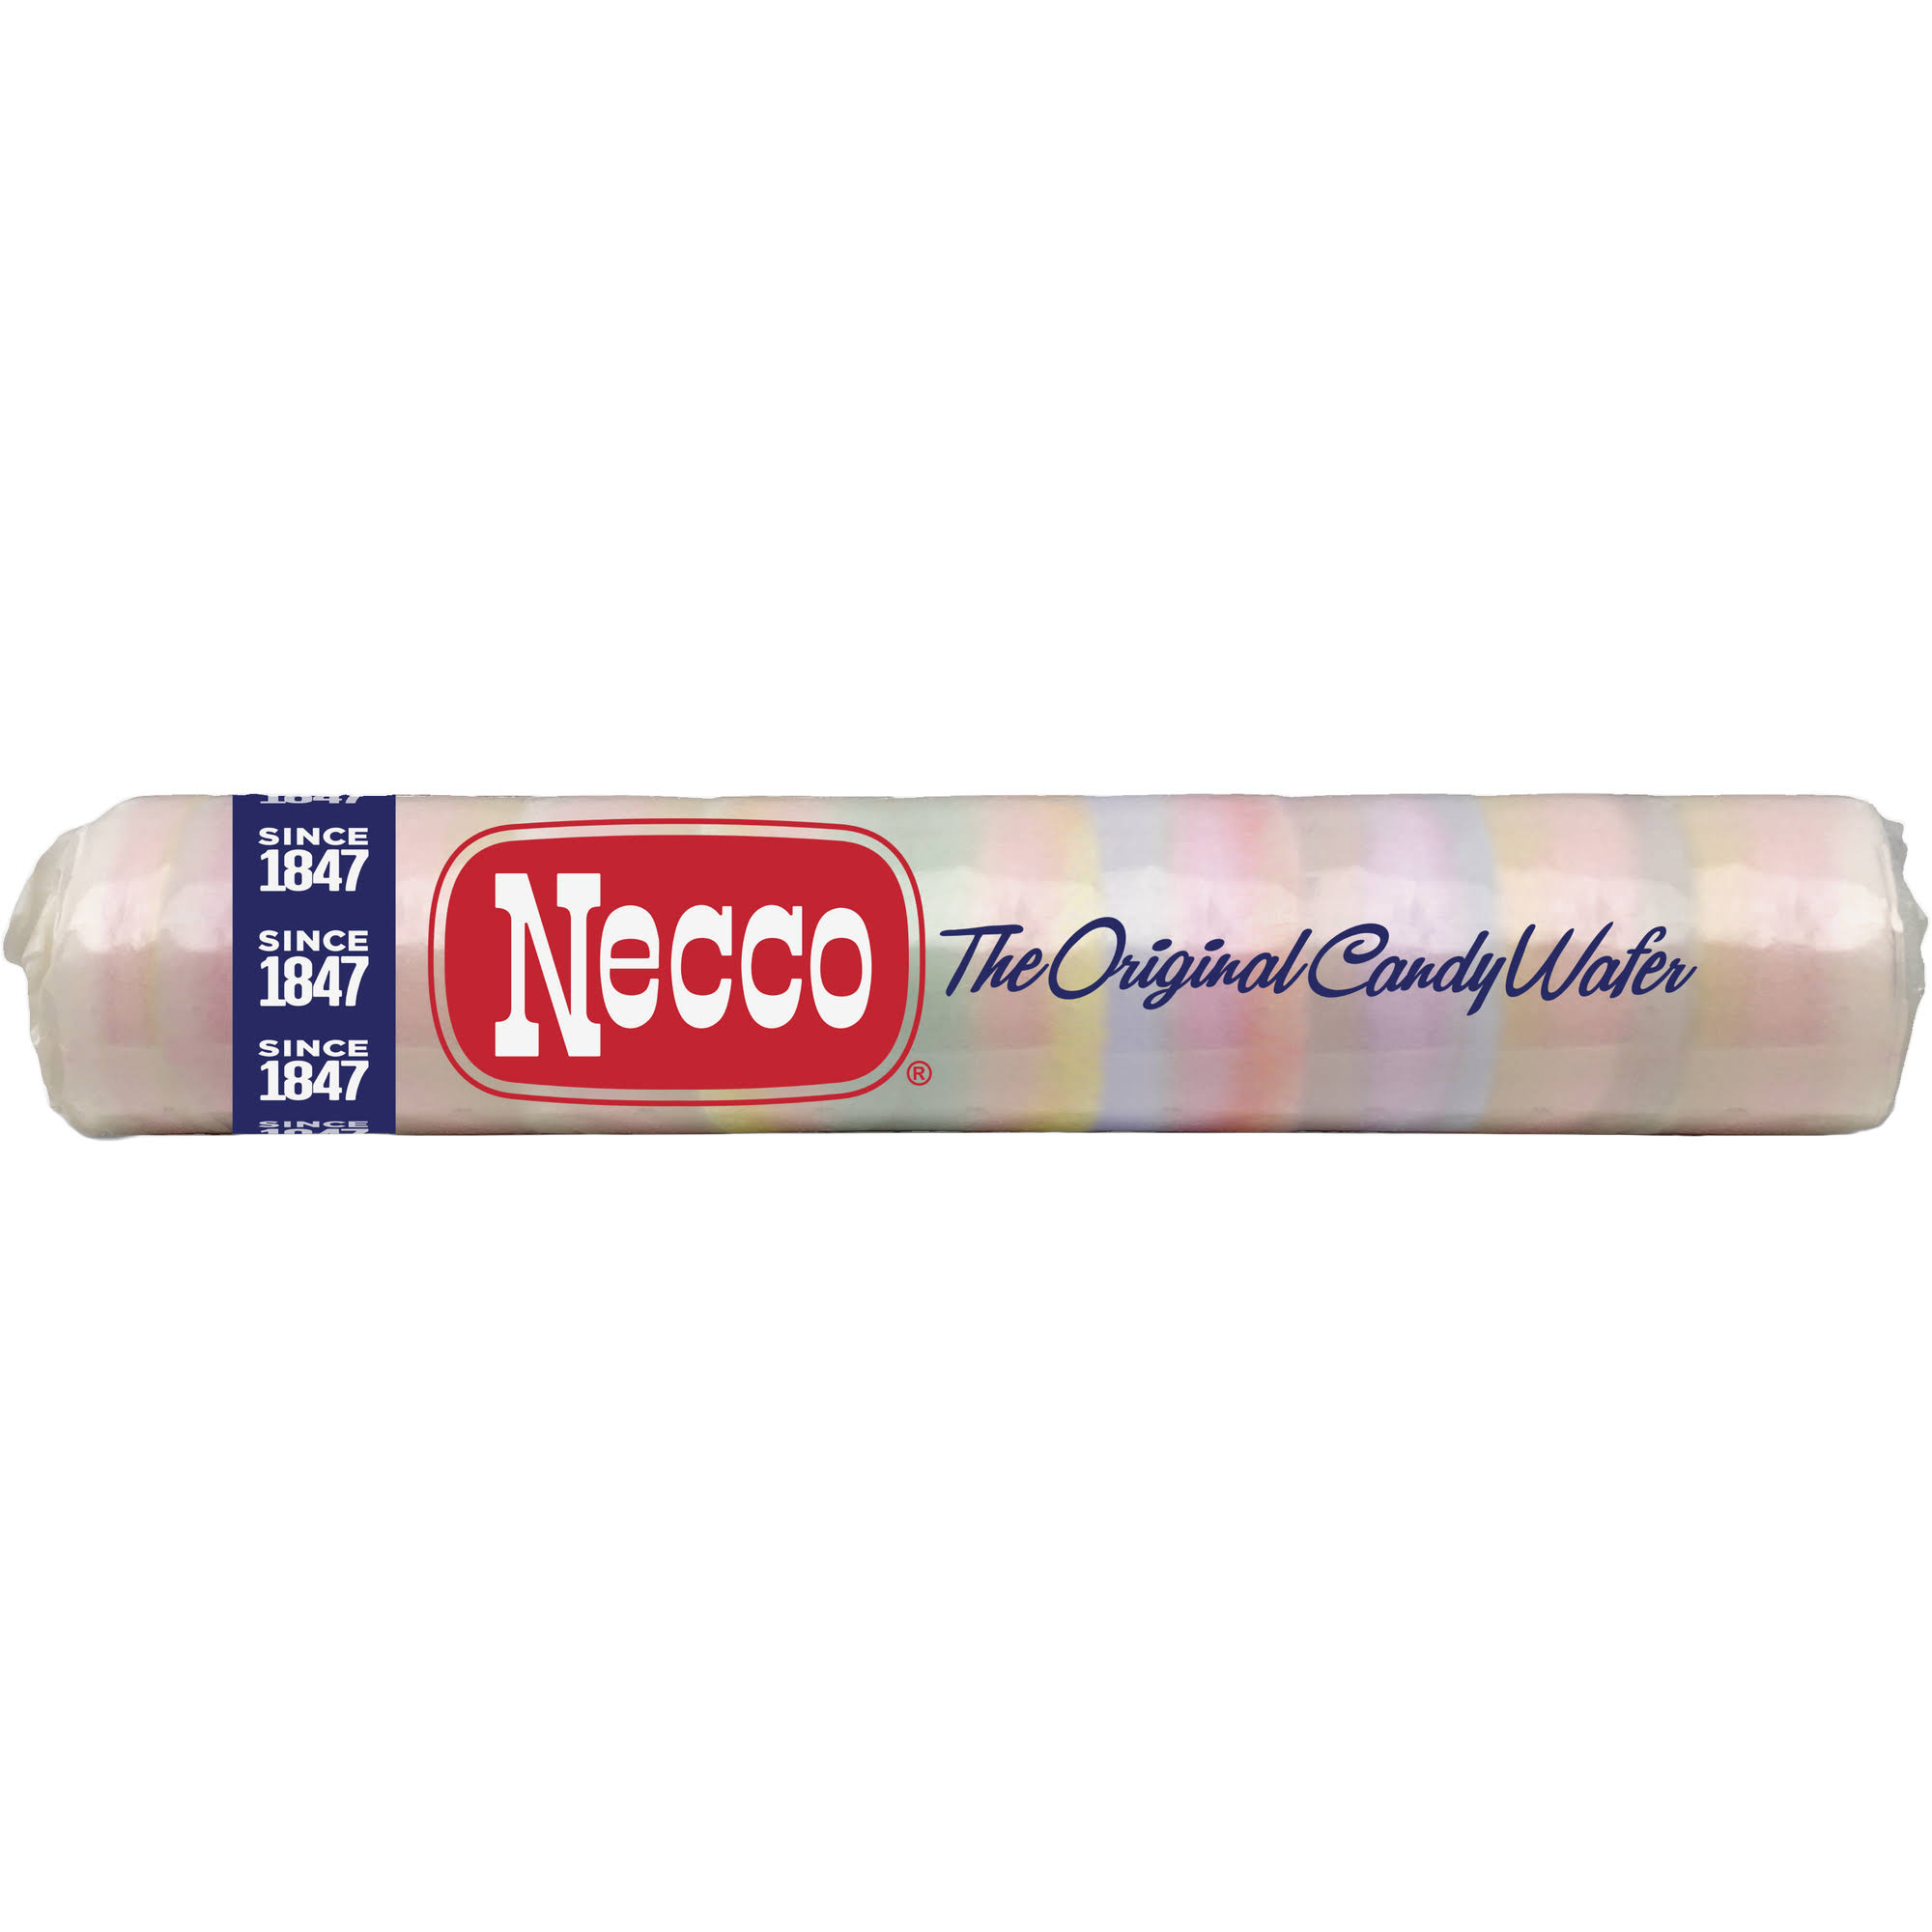 Necco Candy Wafer, The Original - 2 oz